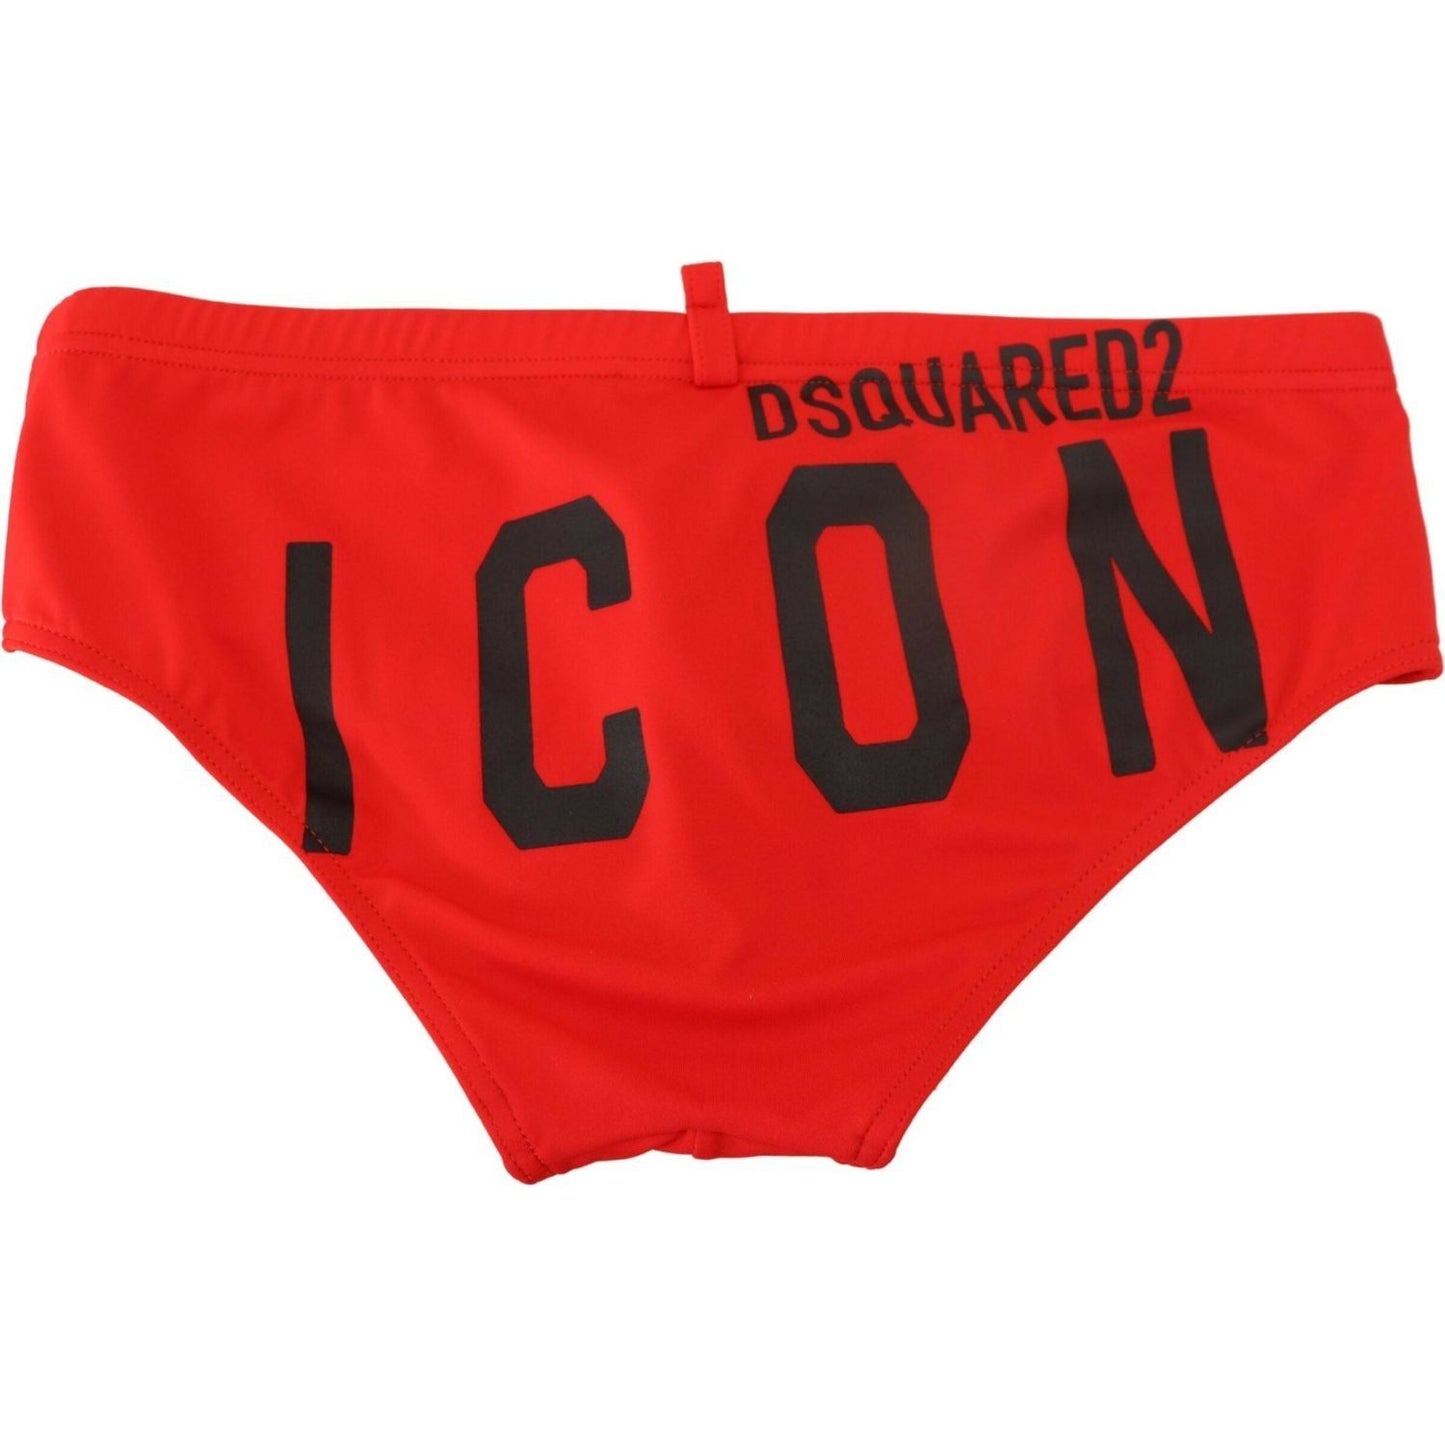 Dsquared² Red ICON Print Swim Briefs red-black-icon-print-mens-swim-brief-swimwear